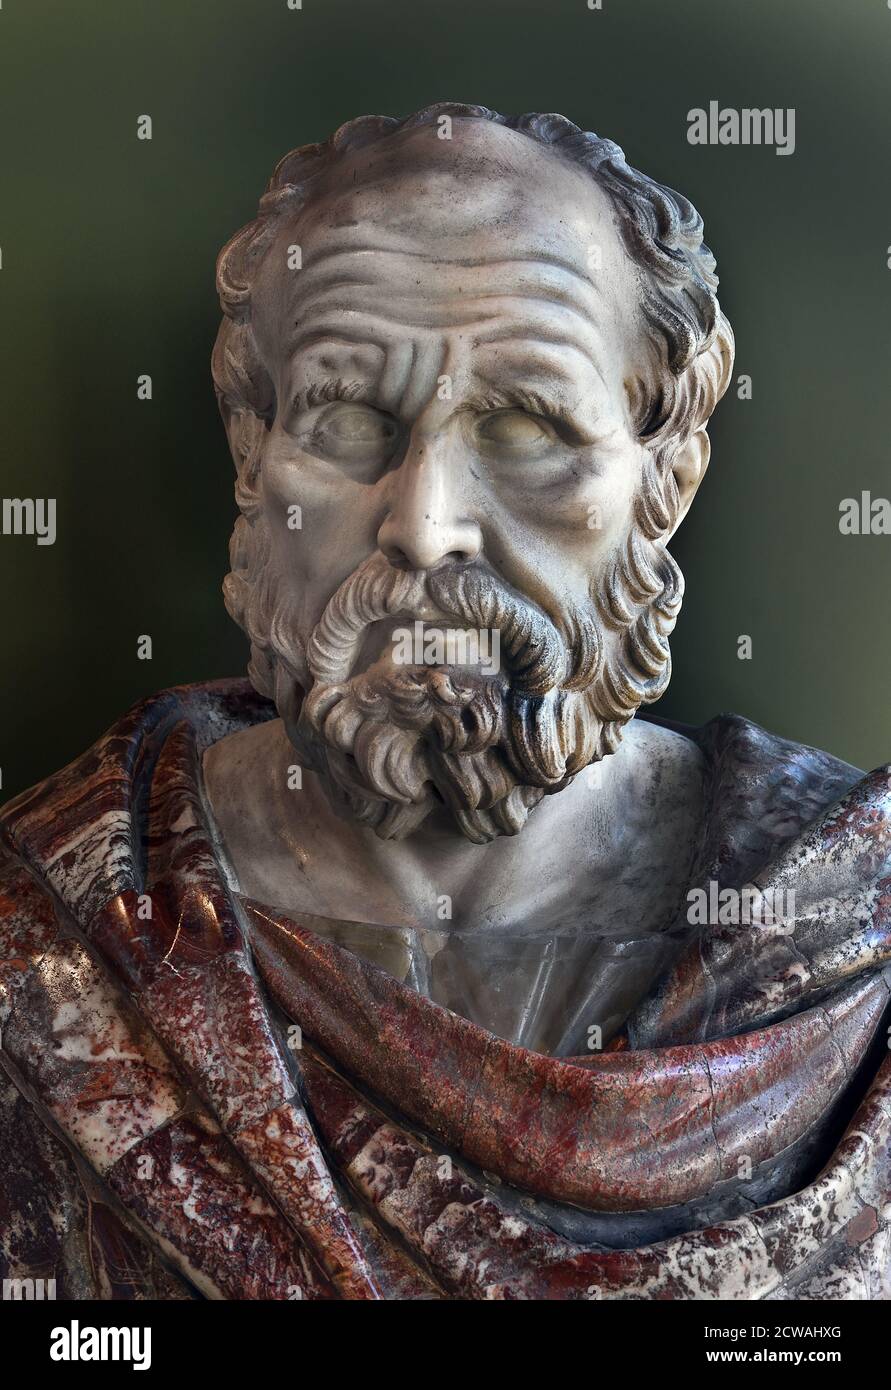 Thucidides 460 - 400 a.C. fu un comandante e storico dell'esercito ateniano della guerra del Peloponneso tra Atene e Sparta. Busto 18 ° secolo Allard Pierson Museo. Foto Stock